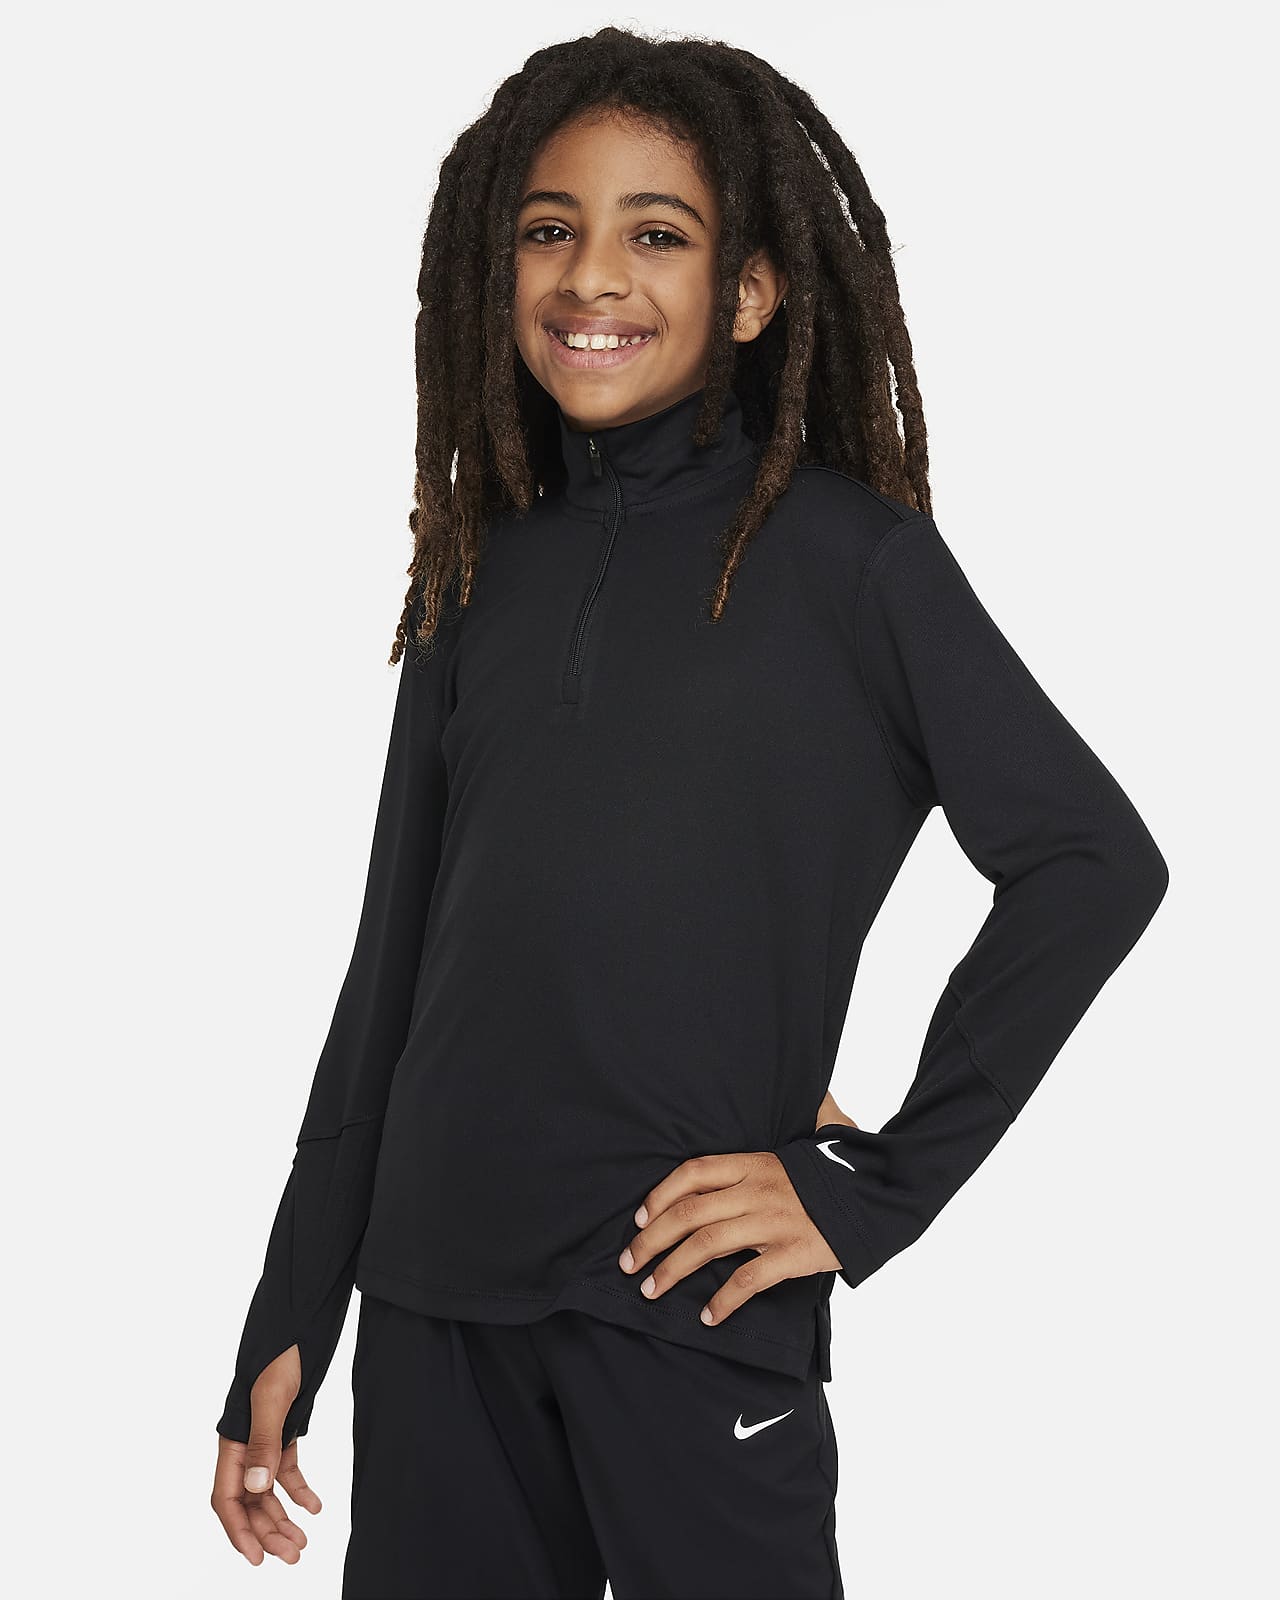 Nike Multi Dri-FIT UV-Longsleeve mit Halbreißverschluss für ältere Kinder (Jungen)